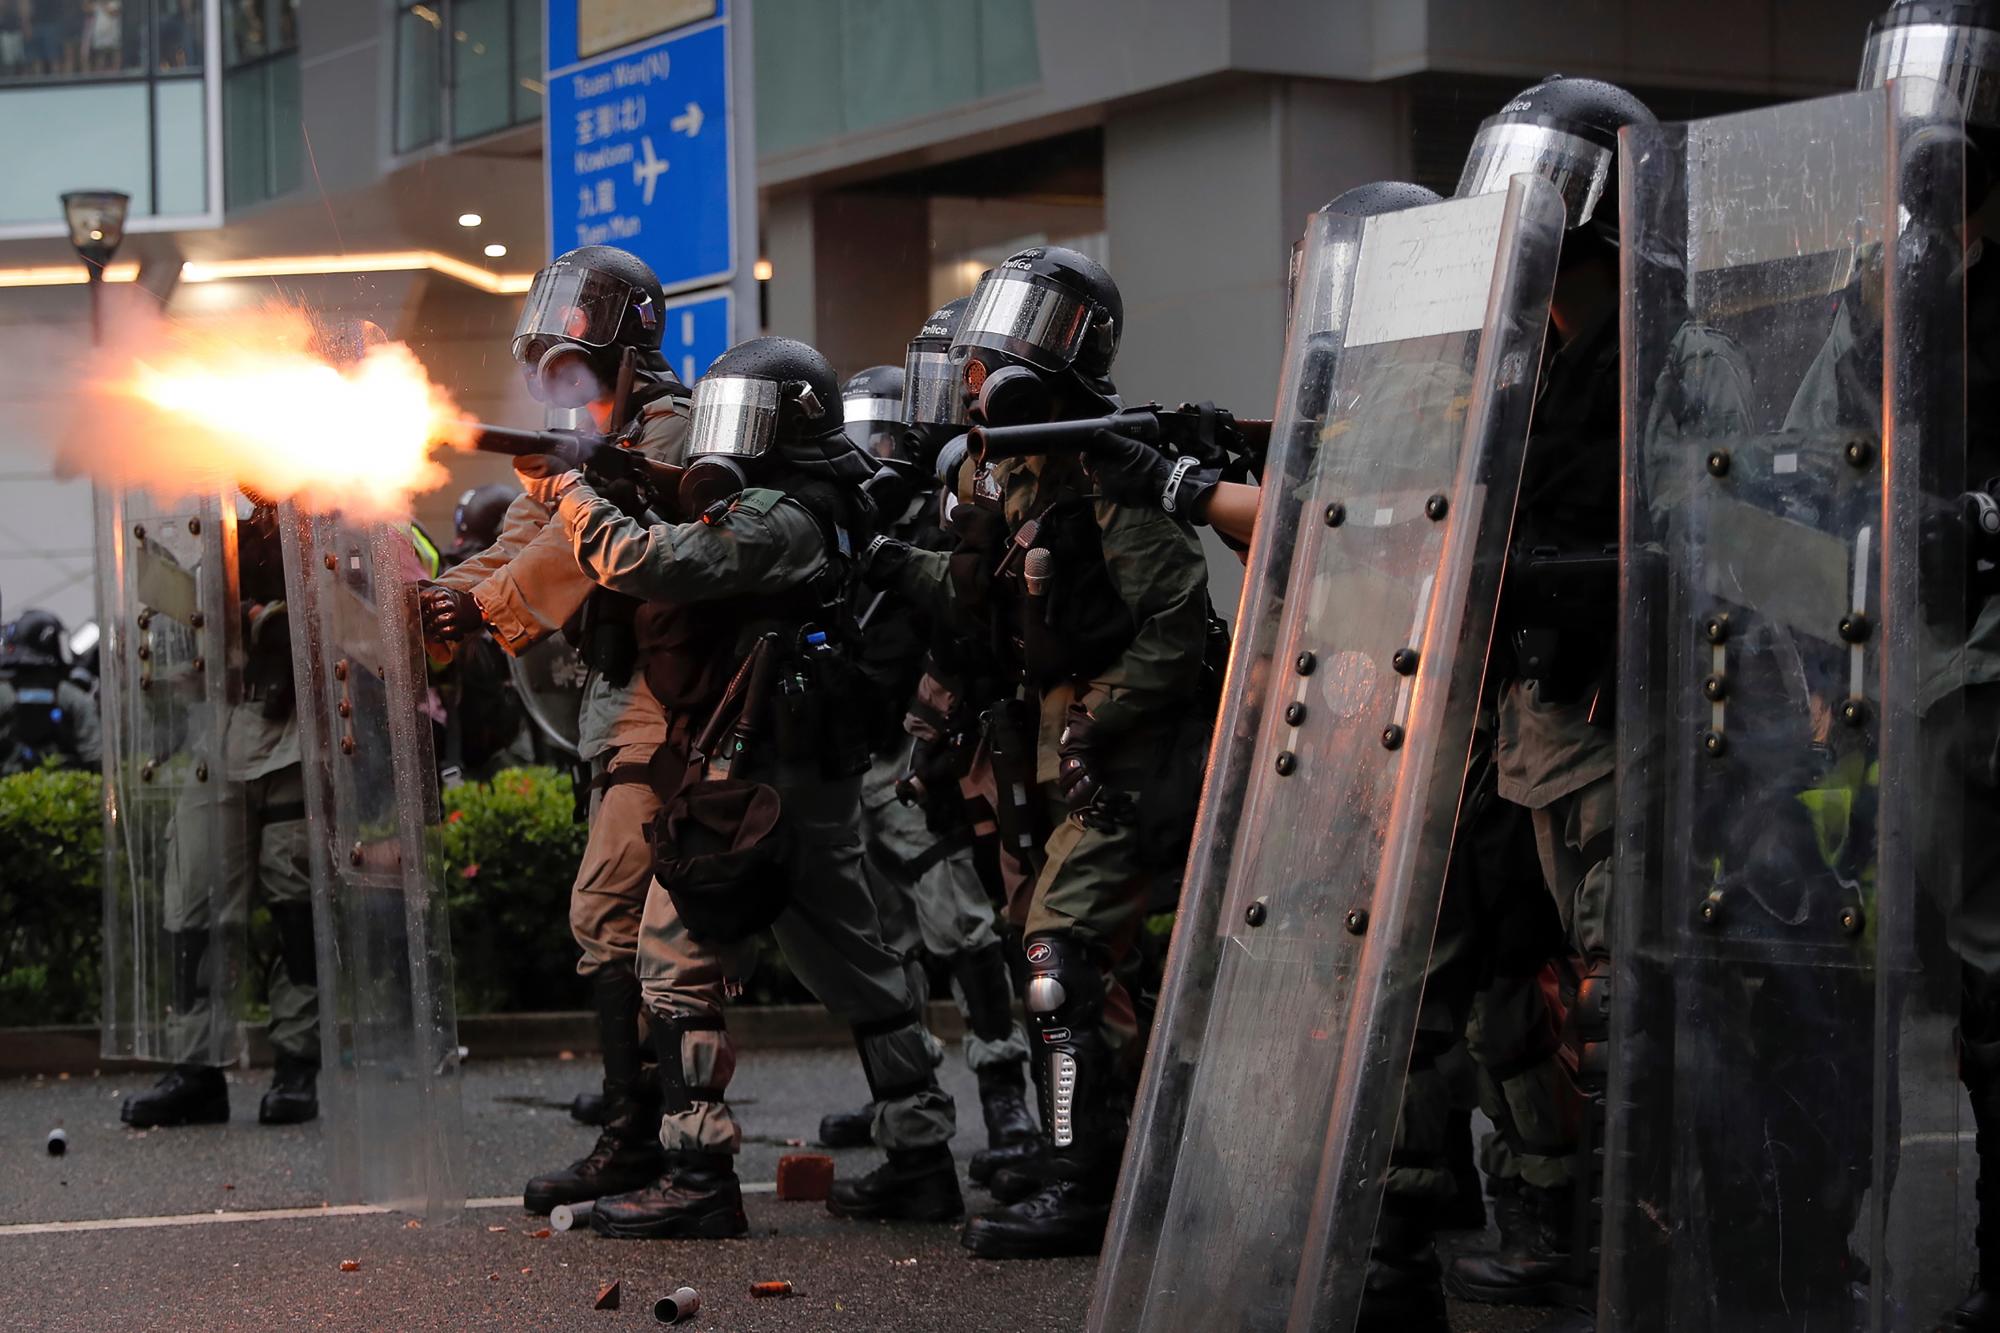 La policía antidisturbios dispara gases lacrimógenos contra los manifestantes durante una protesta en Hong Kong, el domingo 25 de agosto de 2019. La policía se enfrenta con los manifestantes en Hong Kong por segundo día consecutivo el domingo después de una marcha a favor de la democracia en un distrito periférico. 